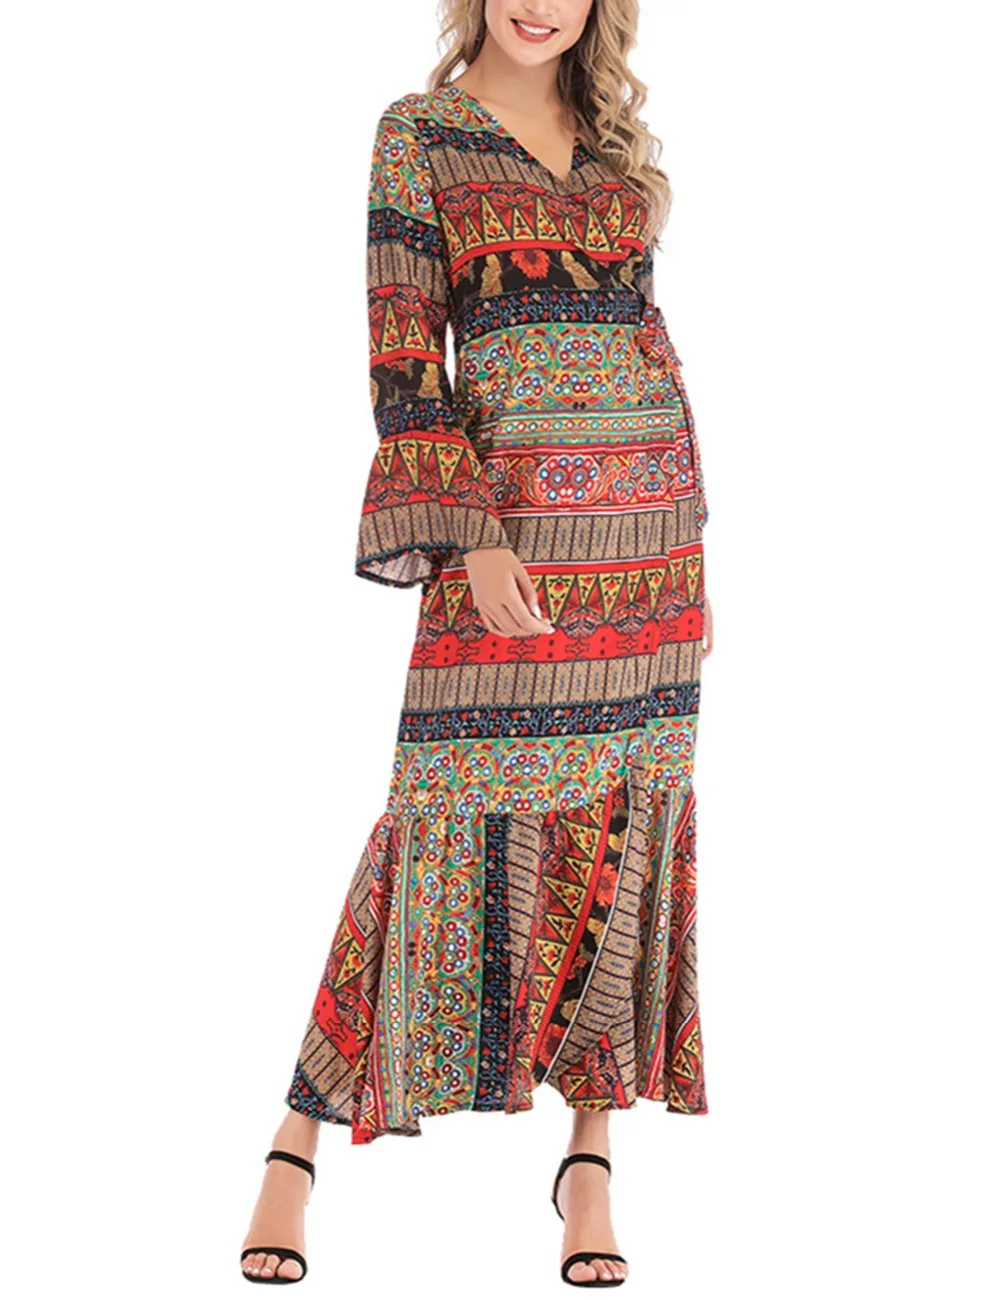 Fadzeco платье в африканском стиле для женщин с рюшами, расклешенными рукавами, этническим принтом, Макси платье с v-образным вырезом